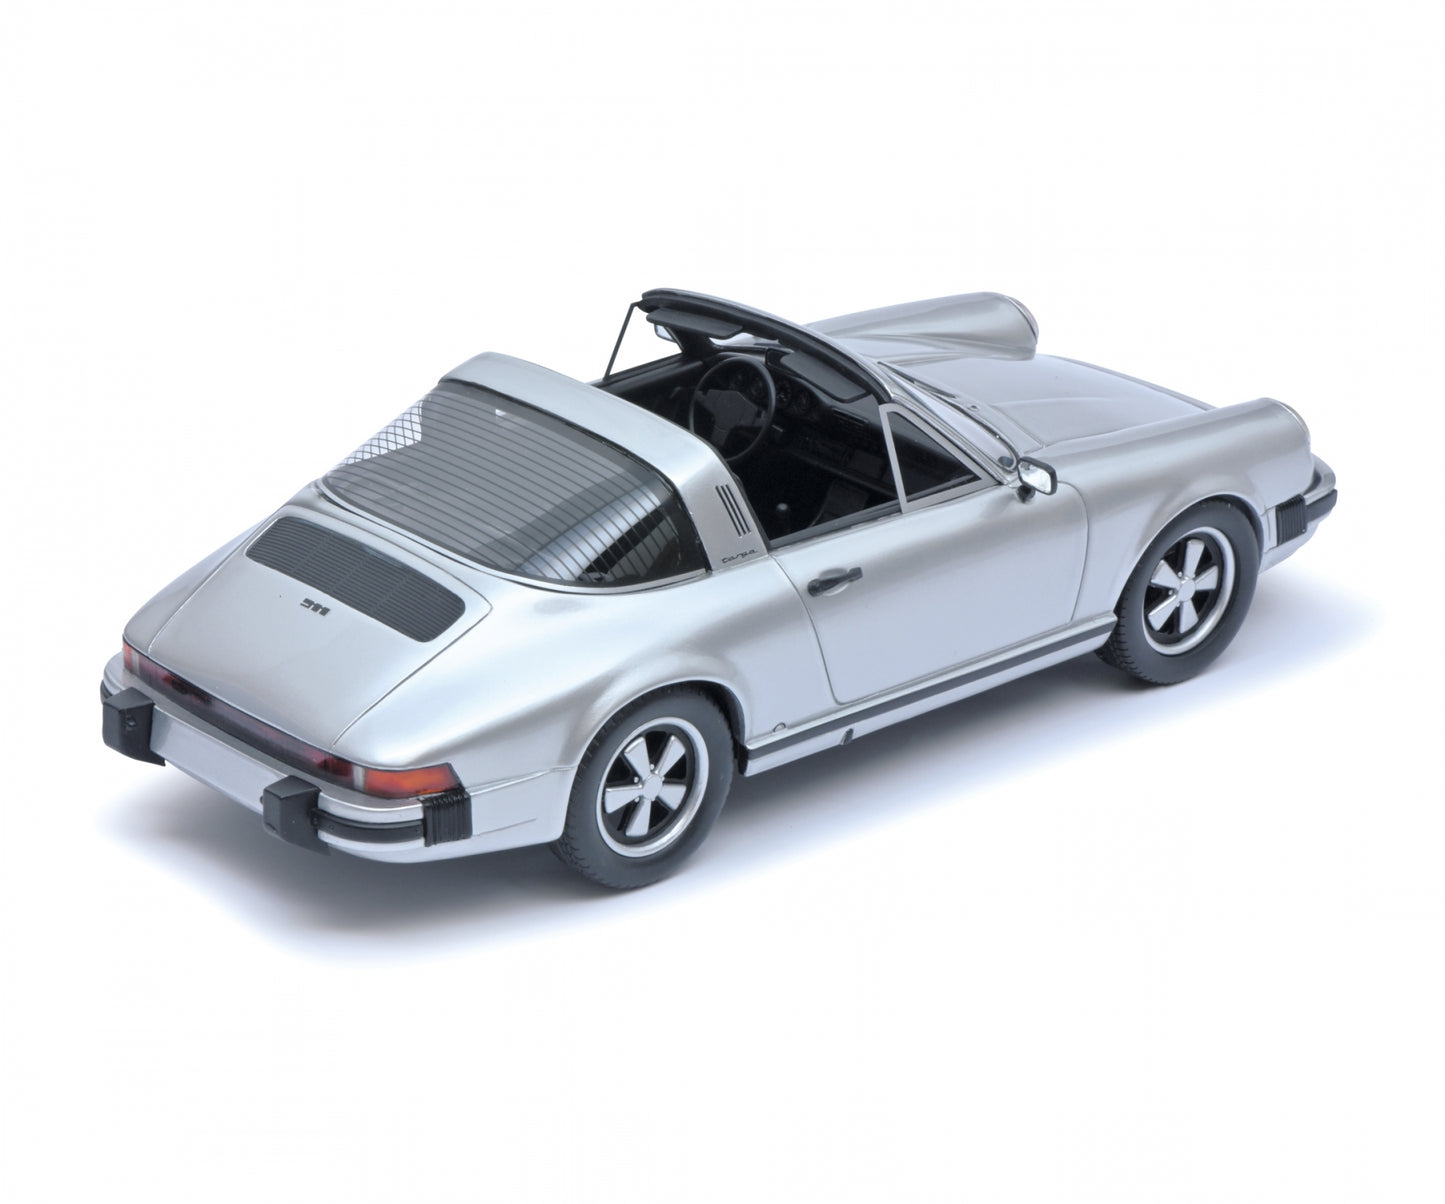 Schuco 1:18 Porsche 911 Targa Silver 450029800